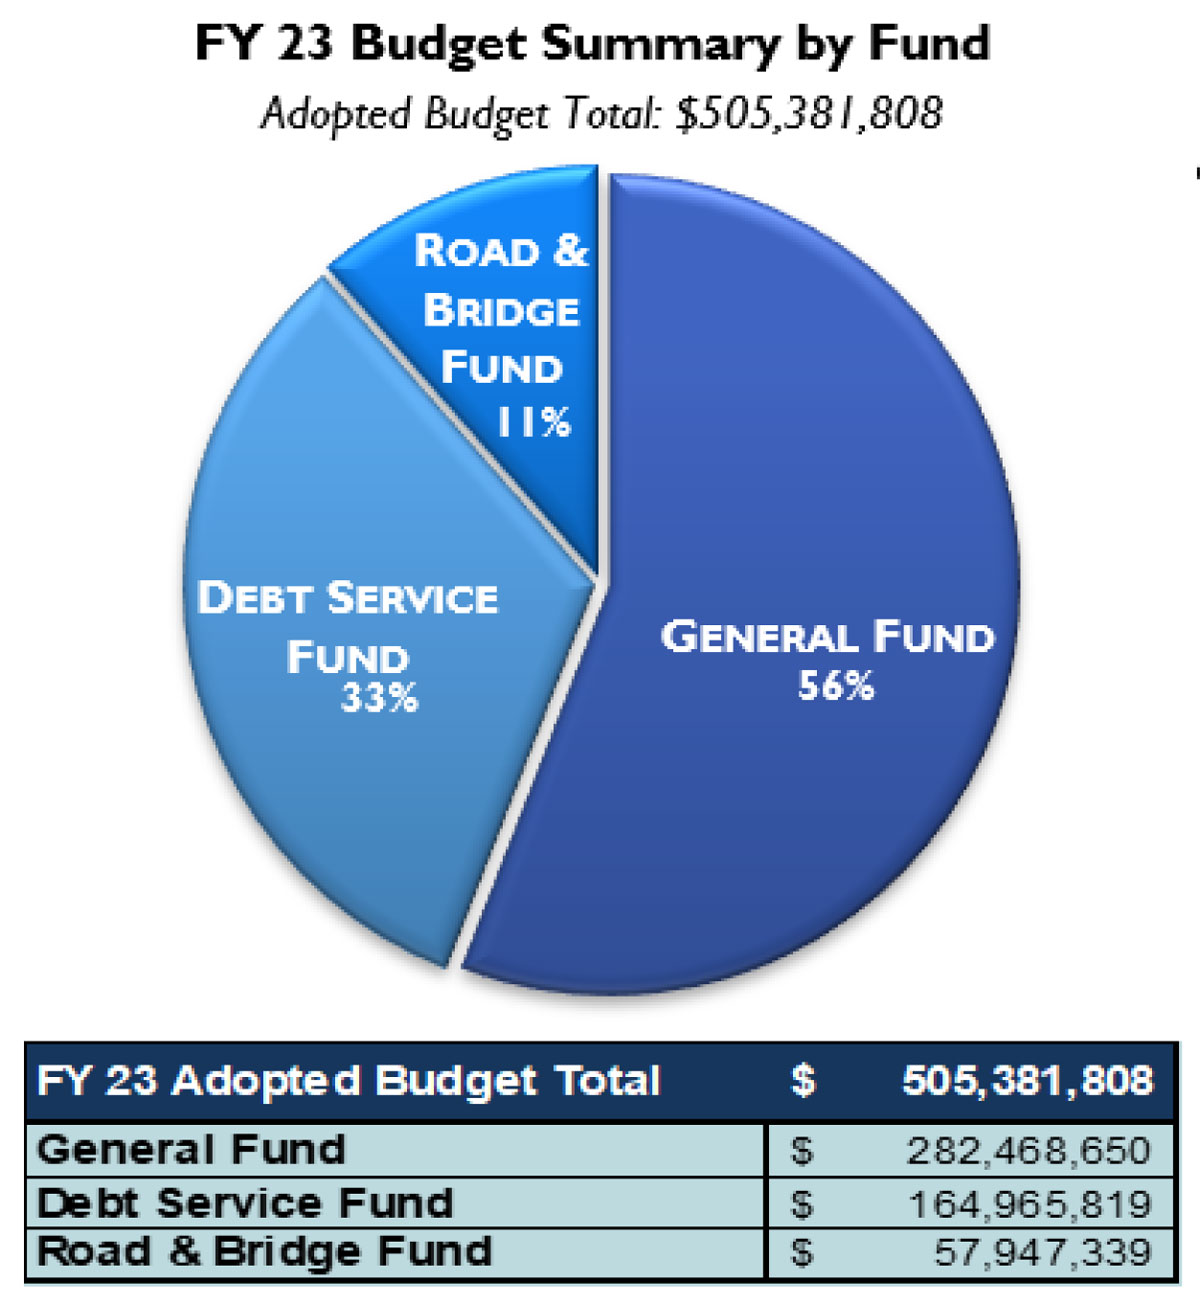 FY23 Budget Summary by Fund Road & Bridget $57,947,339 11% of Total. Debt Service Fund $164,965,819 33% of Total. General Fund $282,468,650 56% of Total